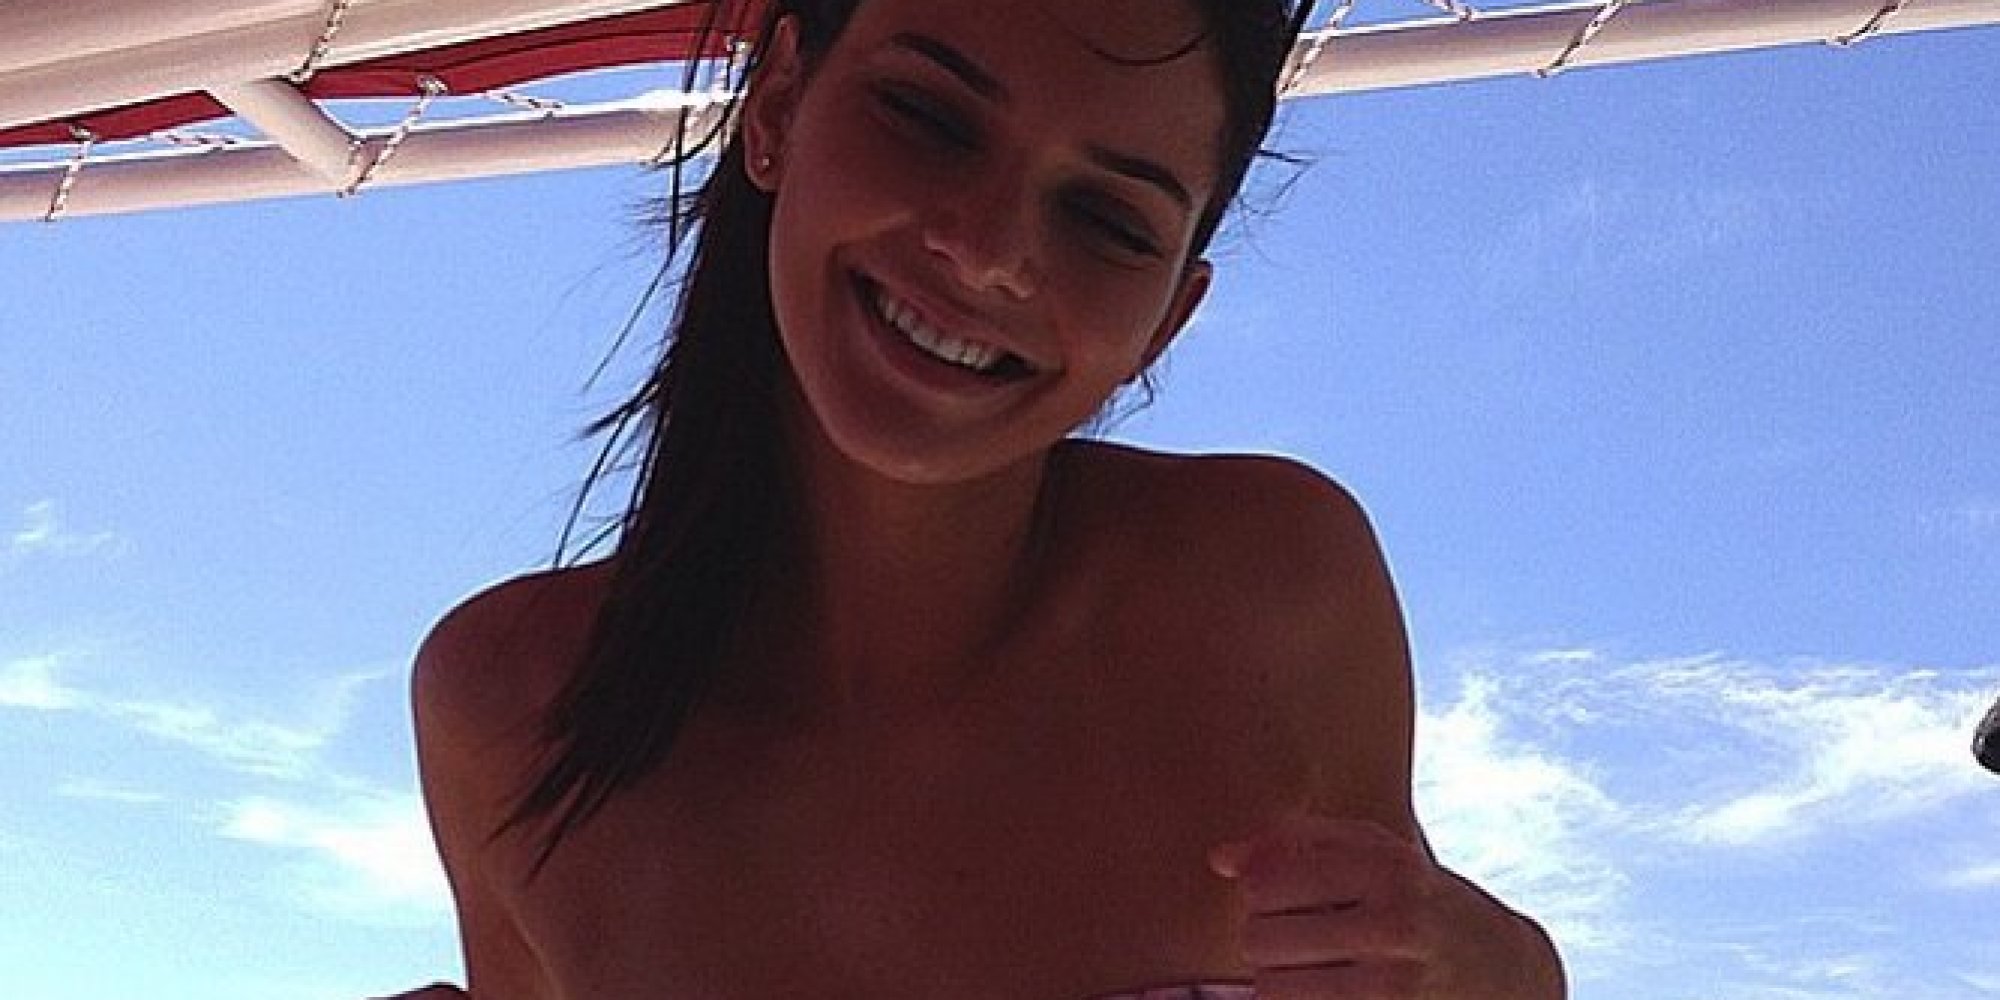 Tak bisa menikmati liburan, Kendall Jenner memilih rehat dari media sosial. (Sumber: Huffington Post)